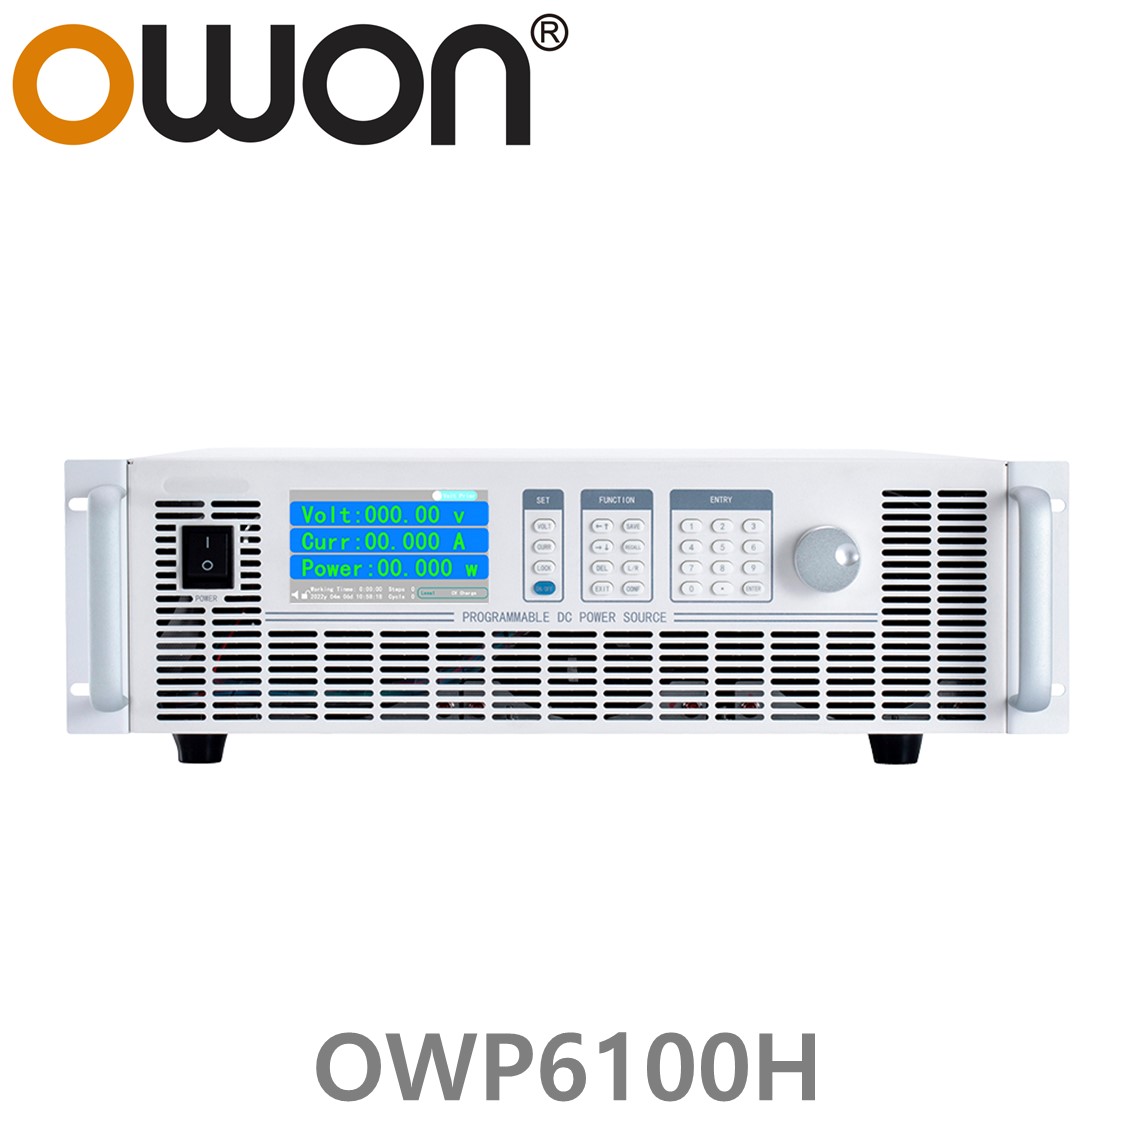 [ OWON ] OWP6100H 고전력 DC파워서플라이, 0-1000.0V / 0-10.000A / 6000.0W DC전원공급장치